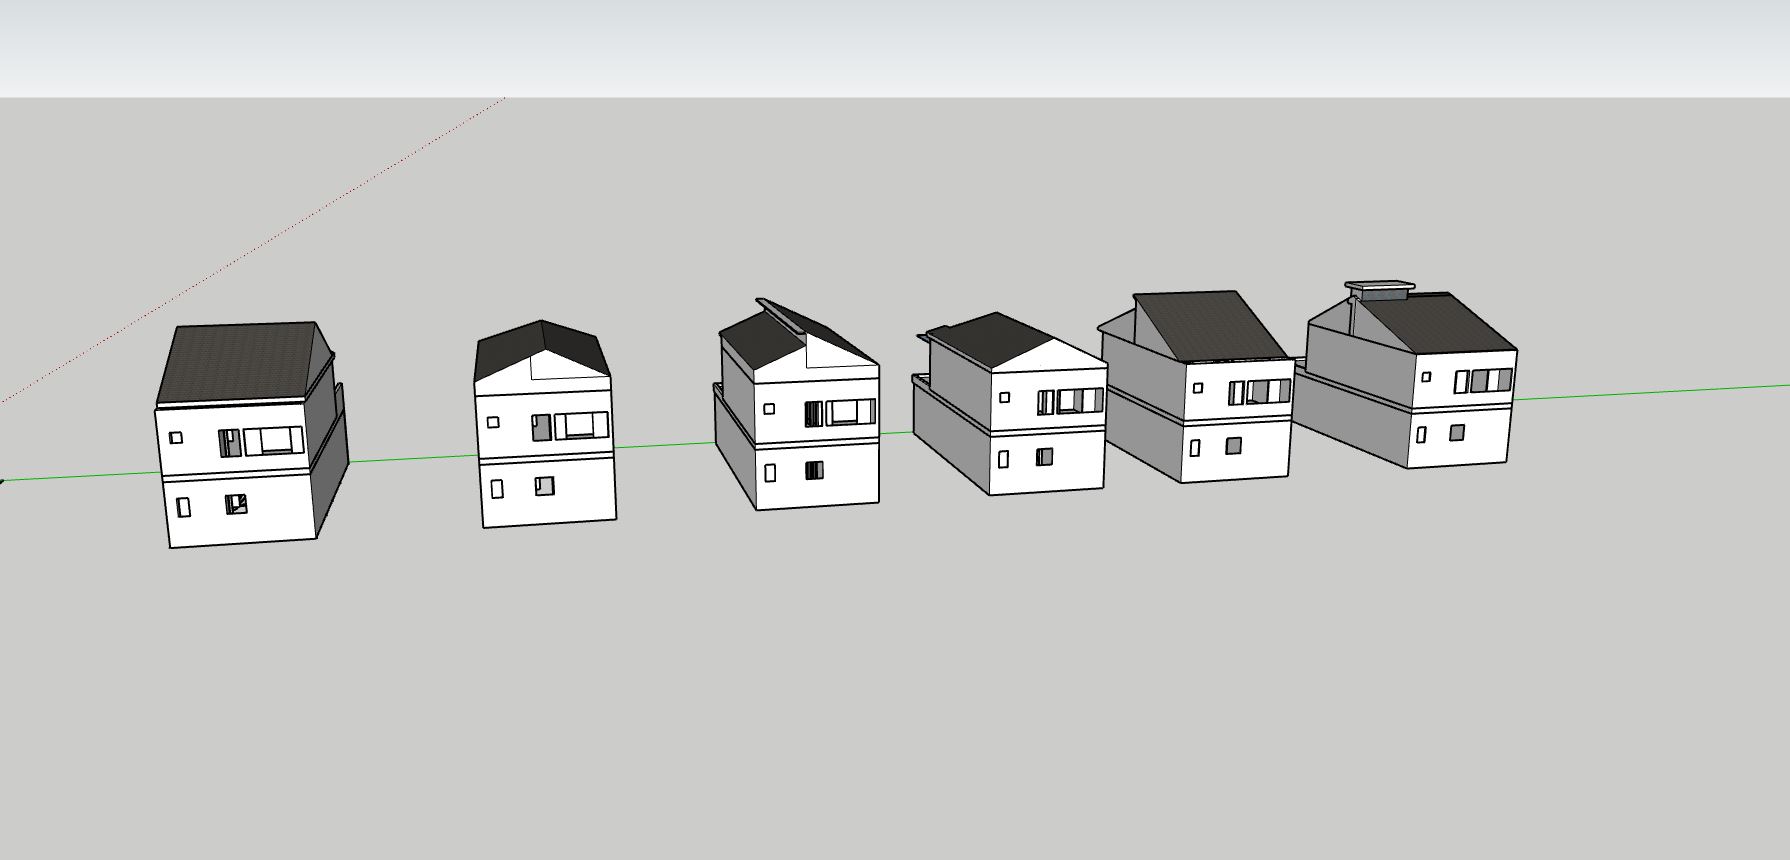 nhà phố 2 tầng,file sketchup nhà phố 2 tầng,mẫu sketchup nhà phố 2 tầng,thiết kế nhà phố 2 tầng